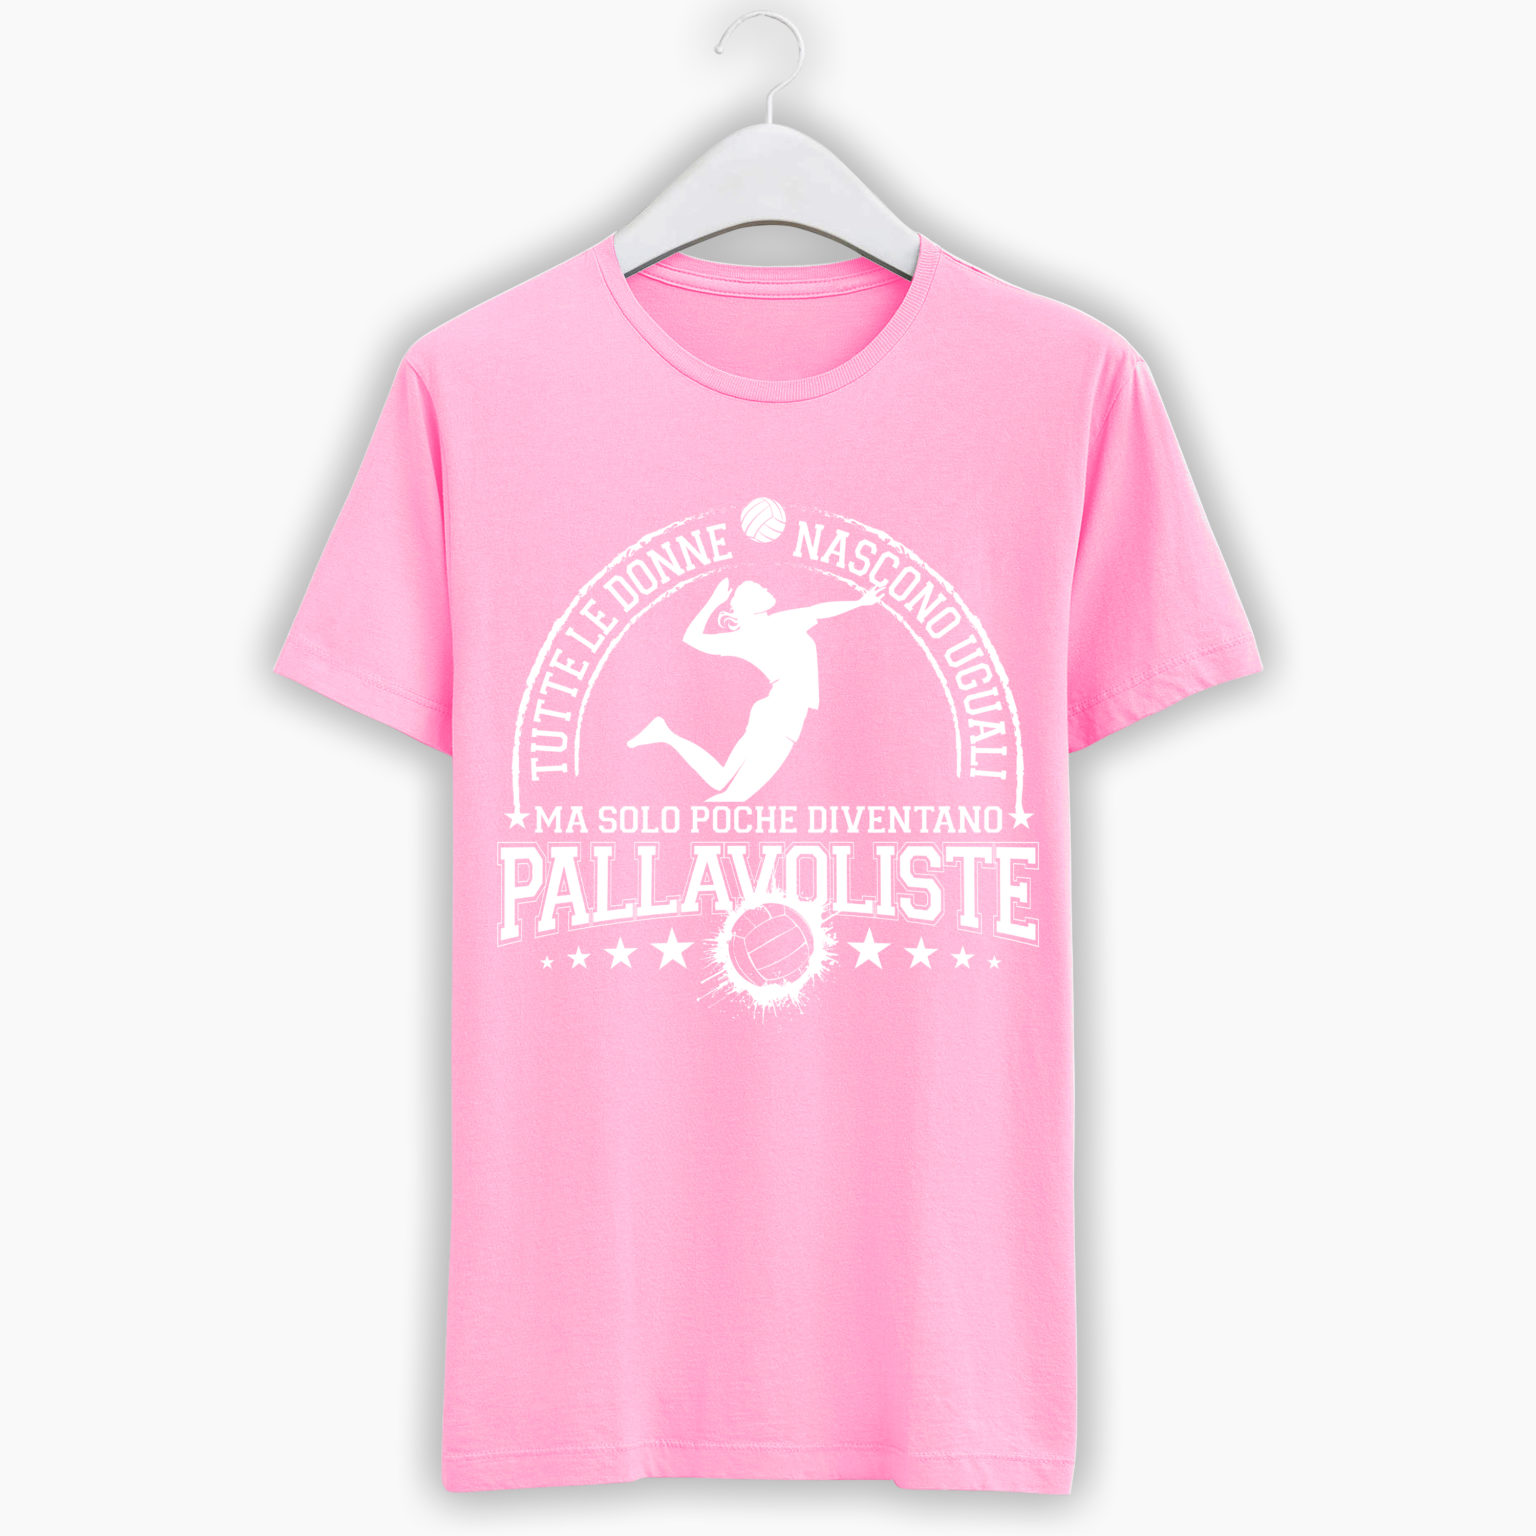 T-Shirt Pallavolo- Tutte le donne nascono uguali ma solo poche diventano pallavoliste